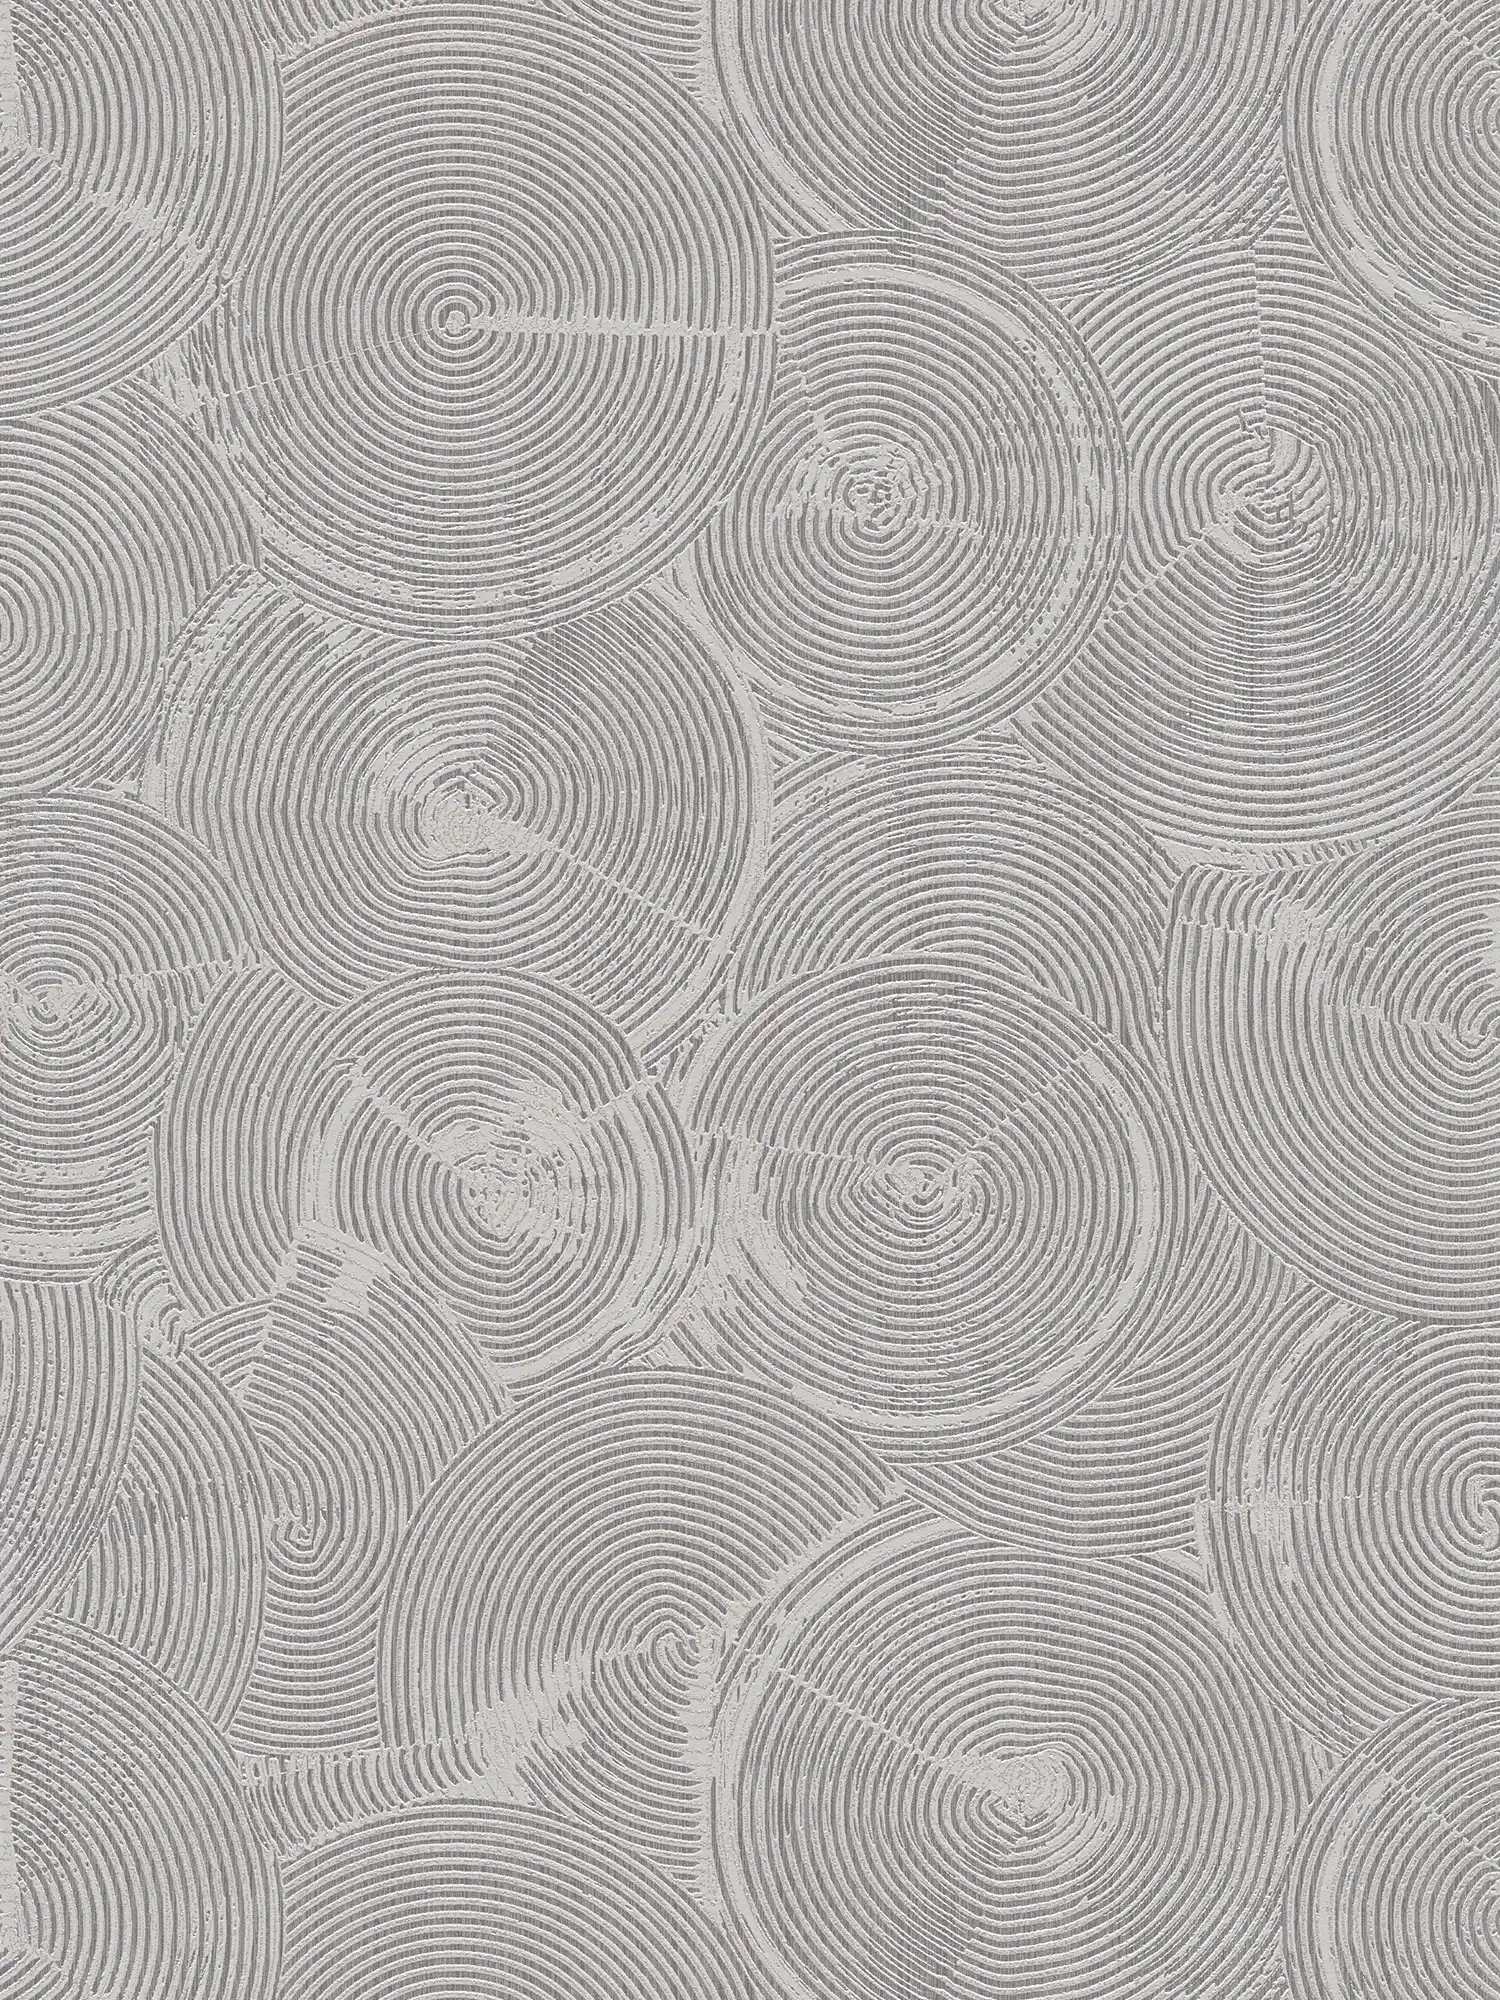 Gipsoptisch behang met zilvermetallic effect - grijs, metallic, wit
